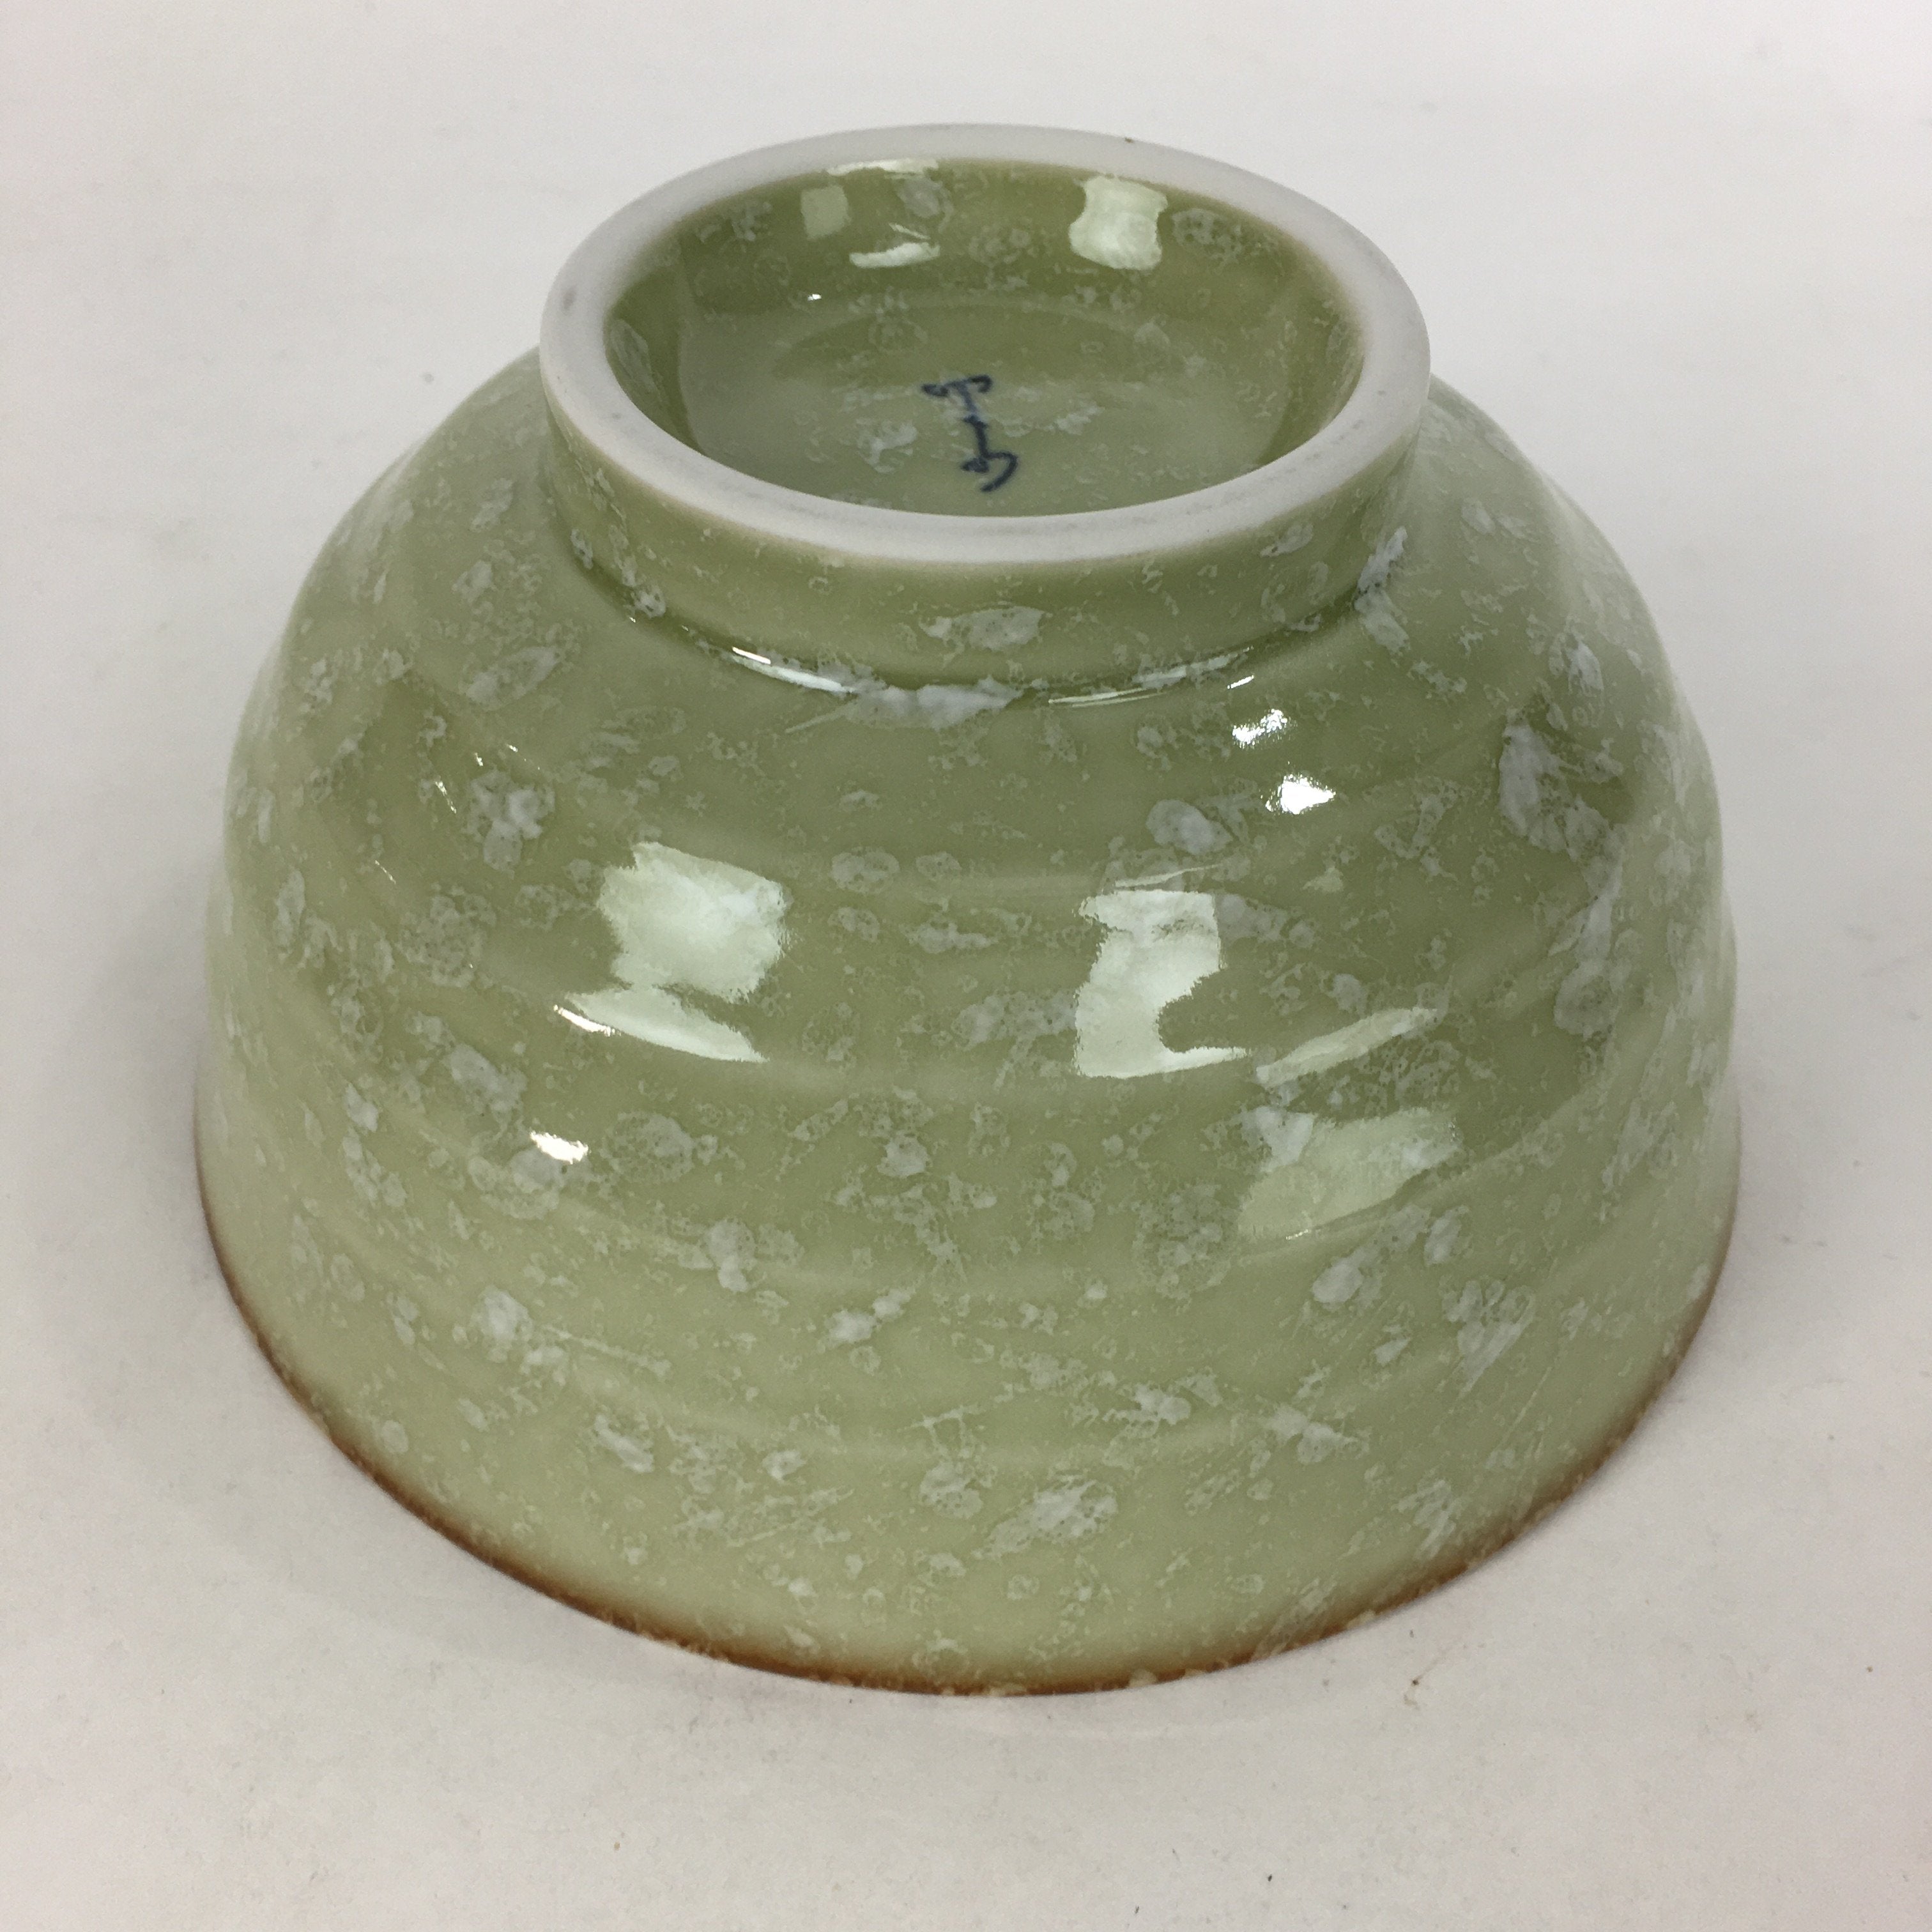 Japanese Porcelain Rice Bowl Vtg Green Mottled Pattern White Flowers Donburi PP6